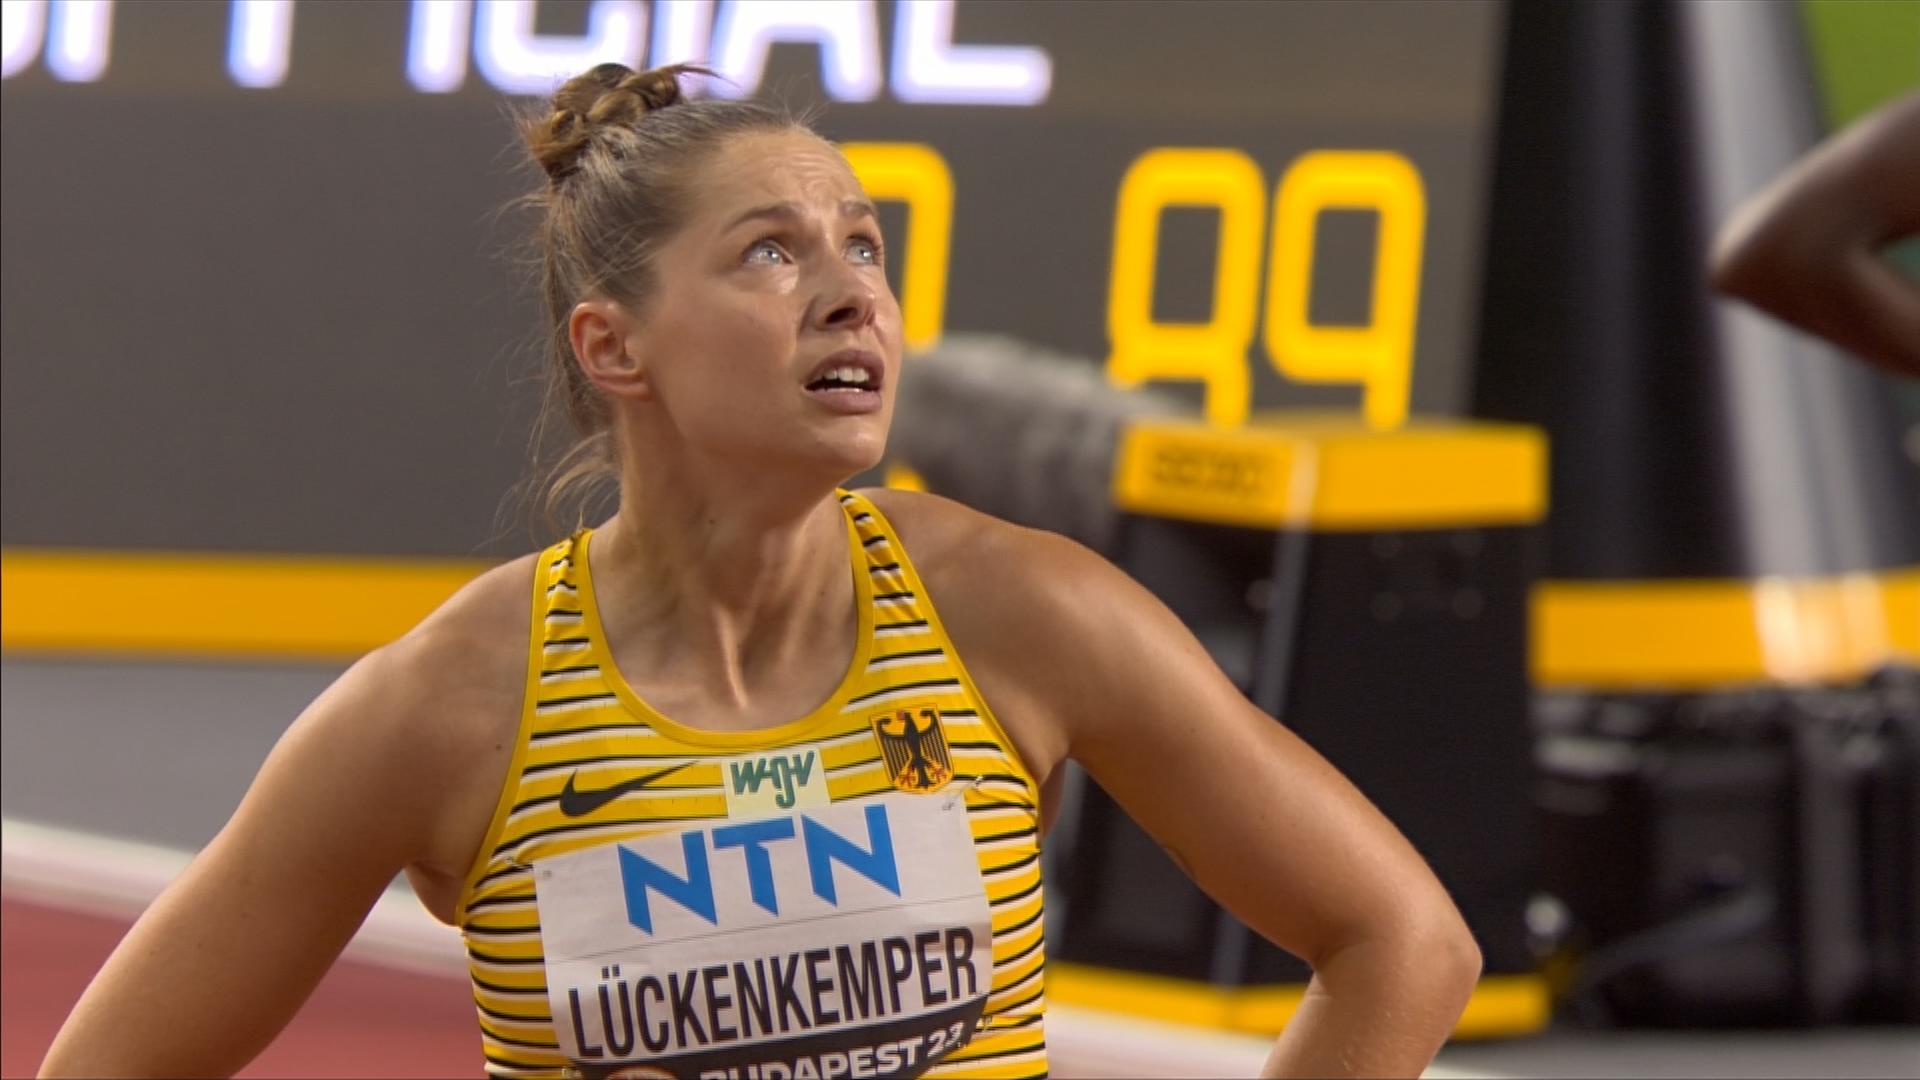 Gina Lückenkemper verpasste das Finale über 100 Meter